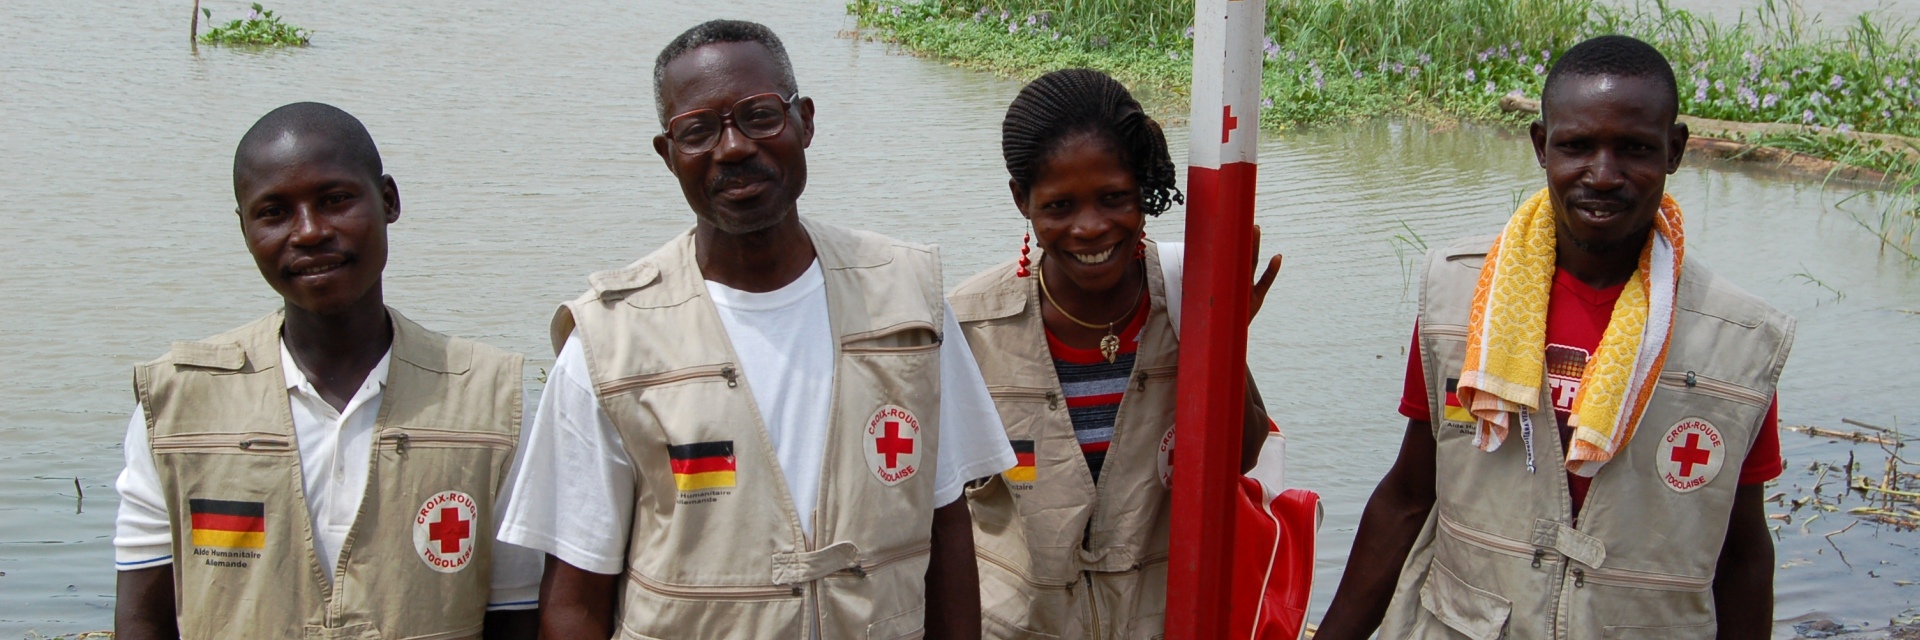 Deutsches Rotes Kreuz, DRK, Afrika, Auslandshilfe, Entwicklungshilfe, Bevölkerung, Vorsorge, Katastrophenschutz, Ruderboot, Boot